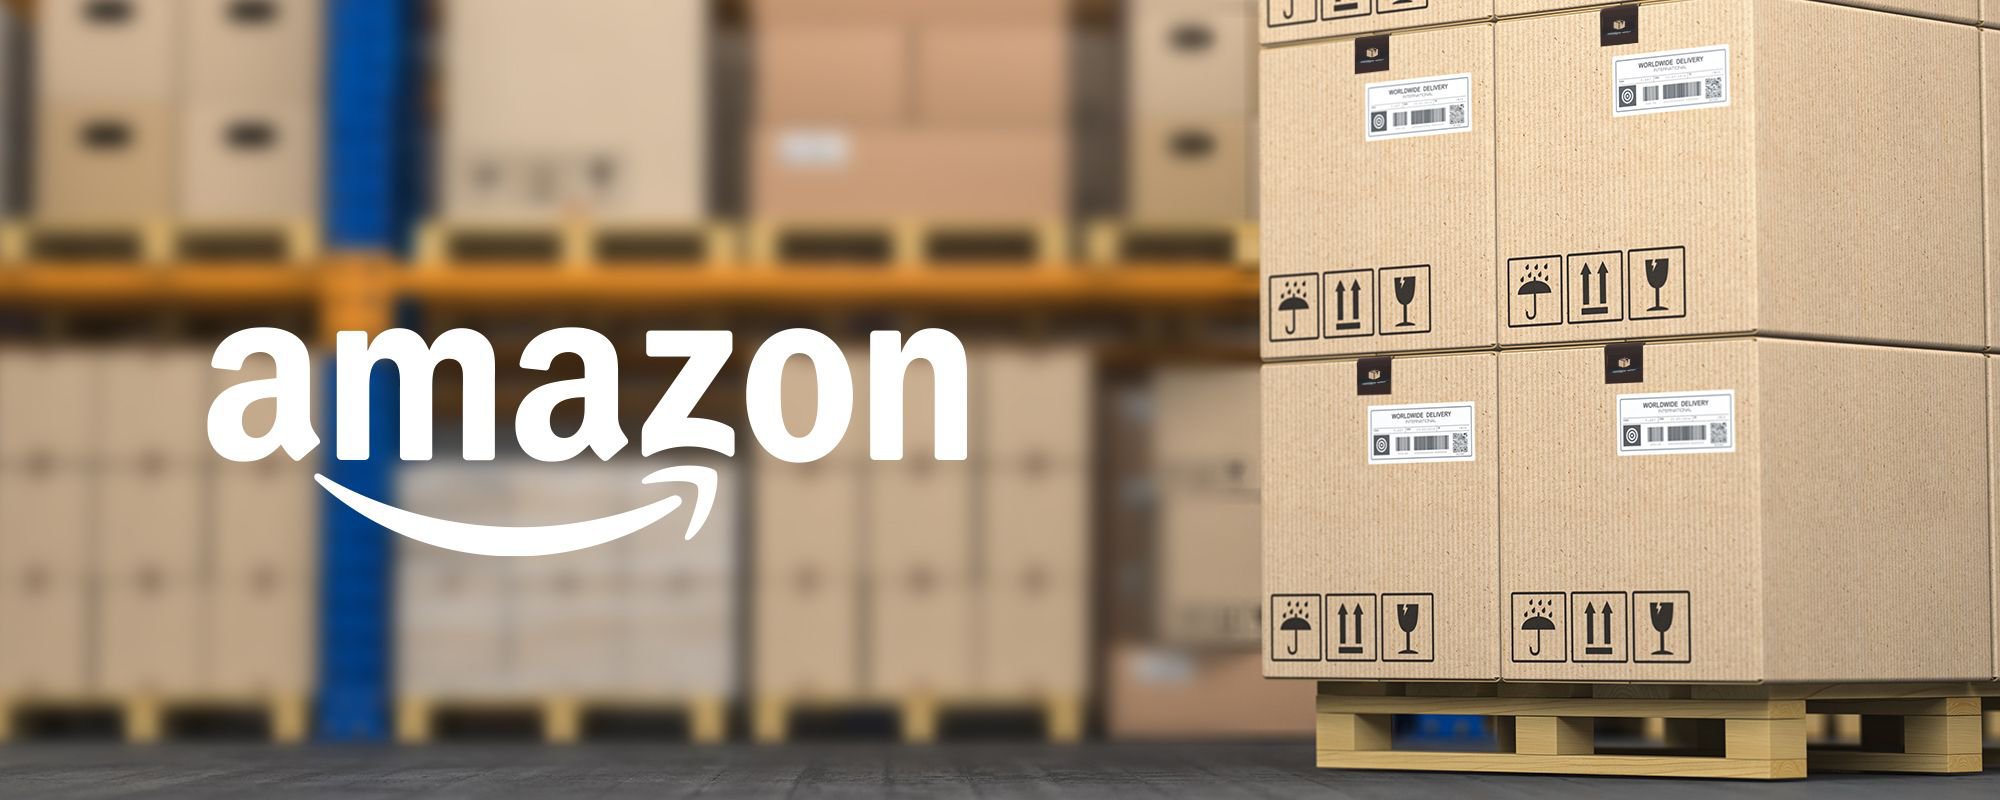 Discounted Amazon Liquidation Deals - Moneytutorial